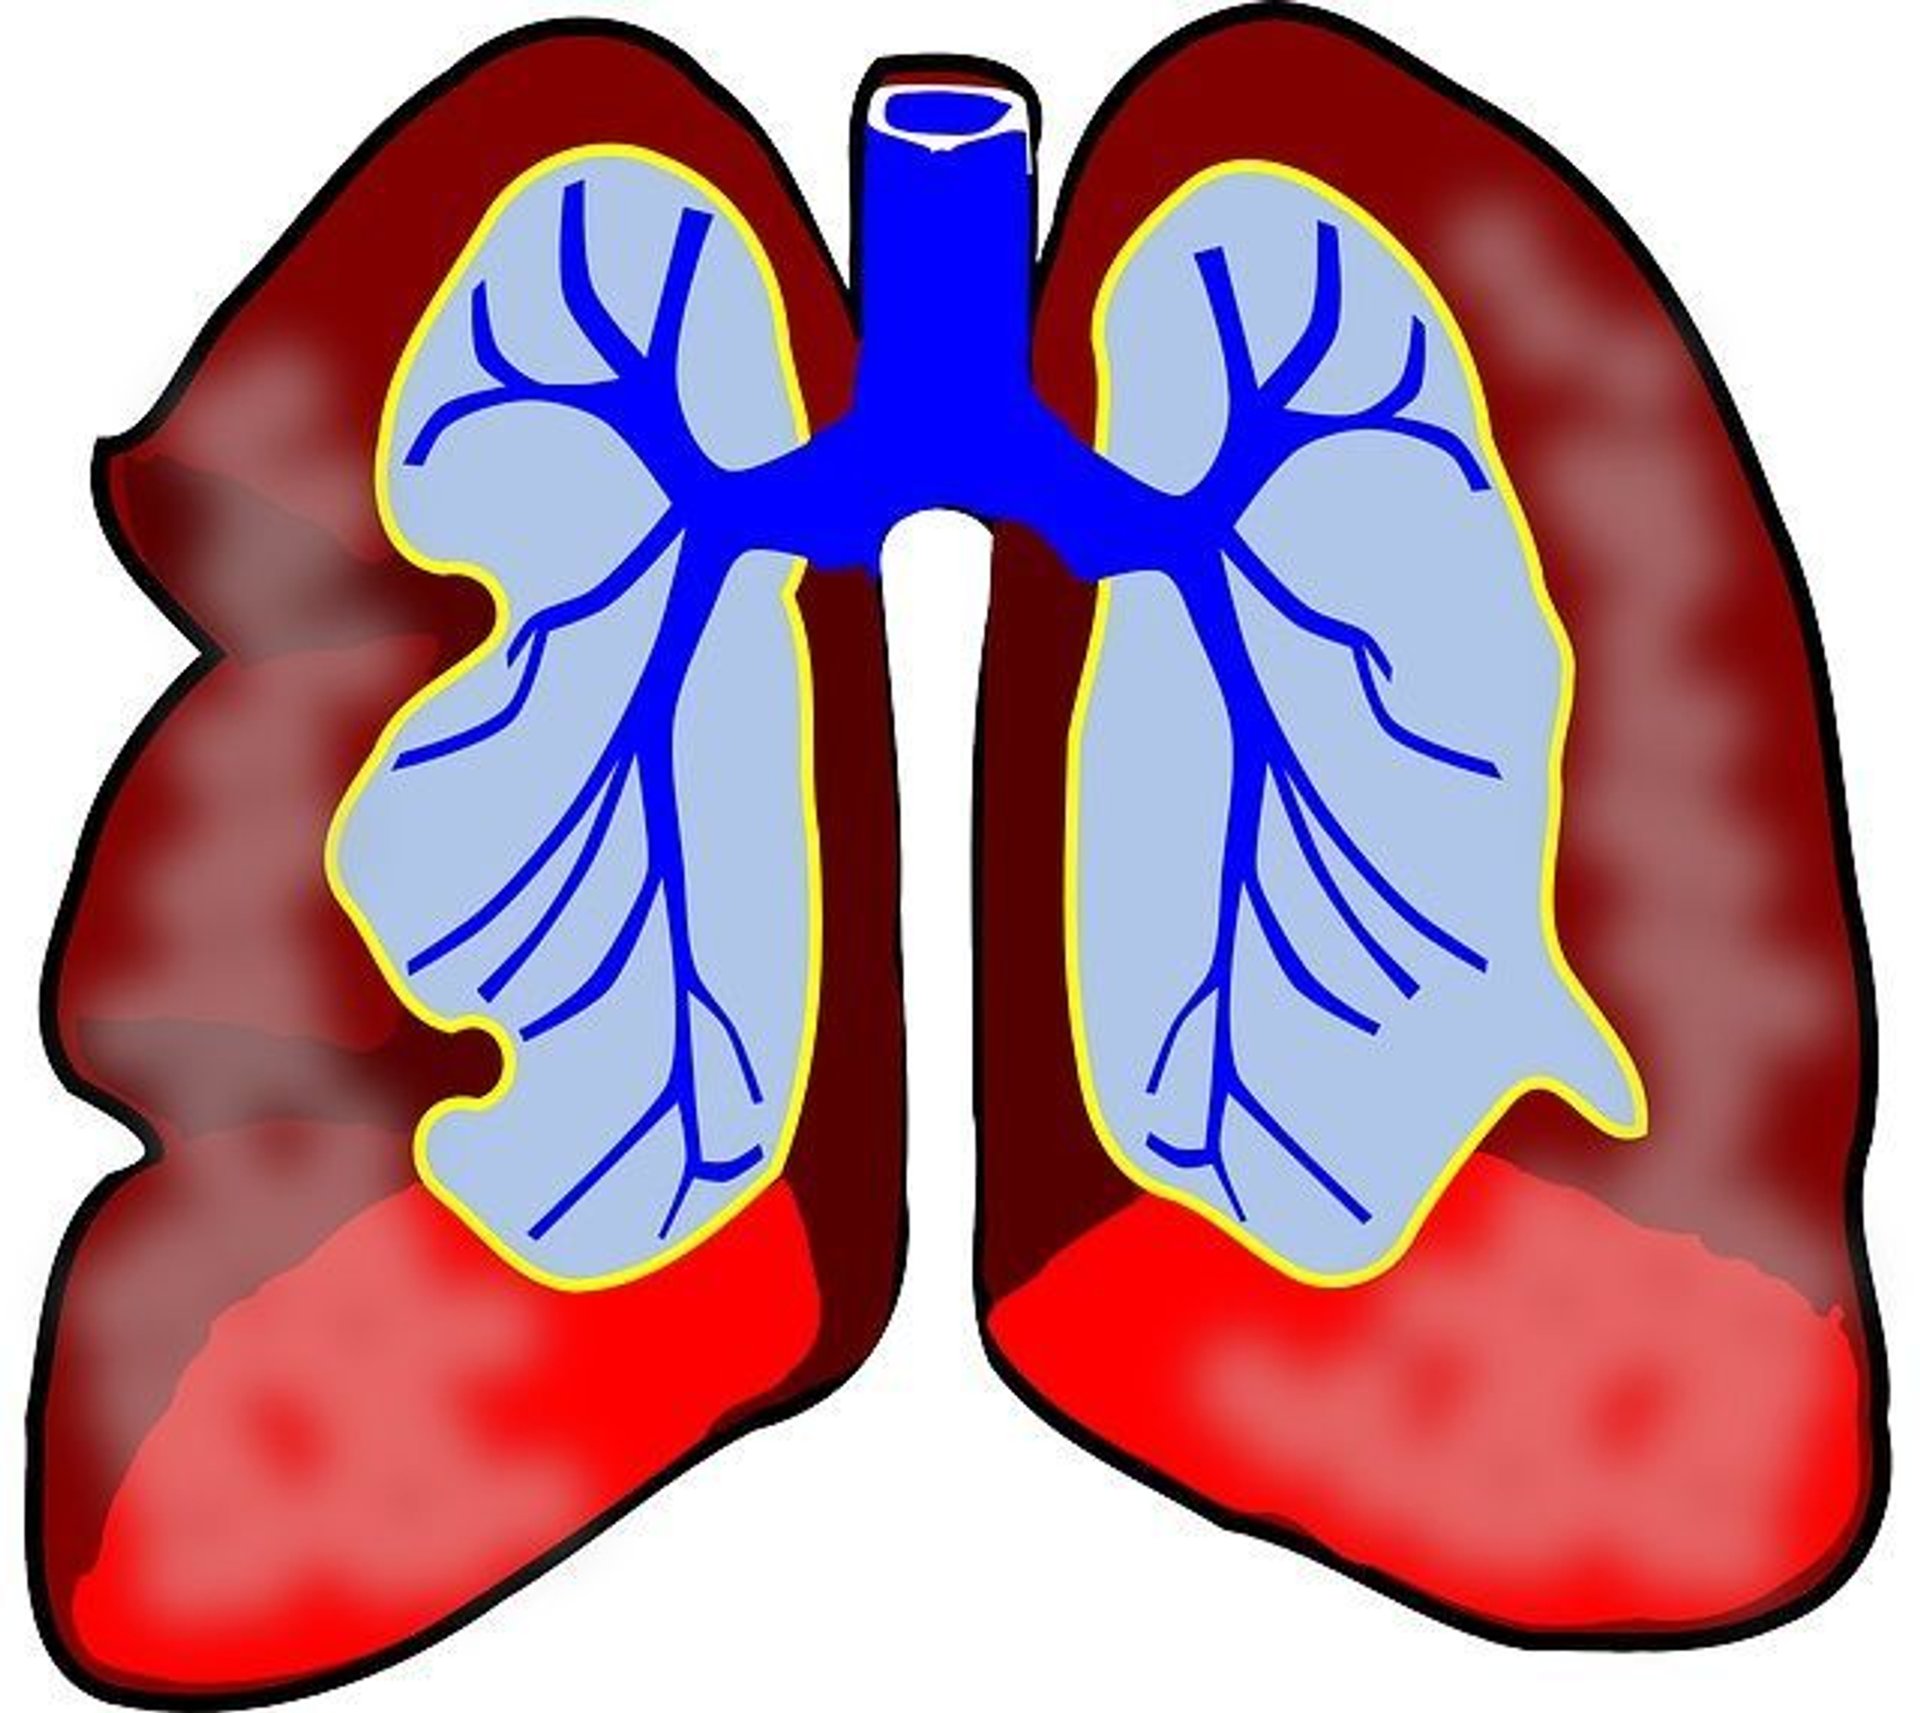 Astma wysiłkowa – objawy i leczenie